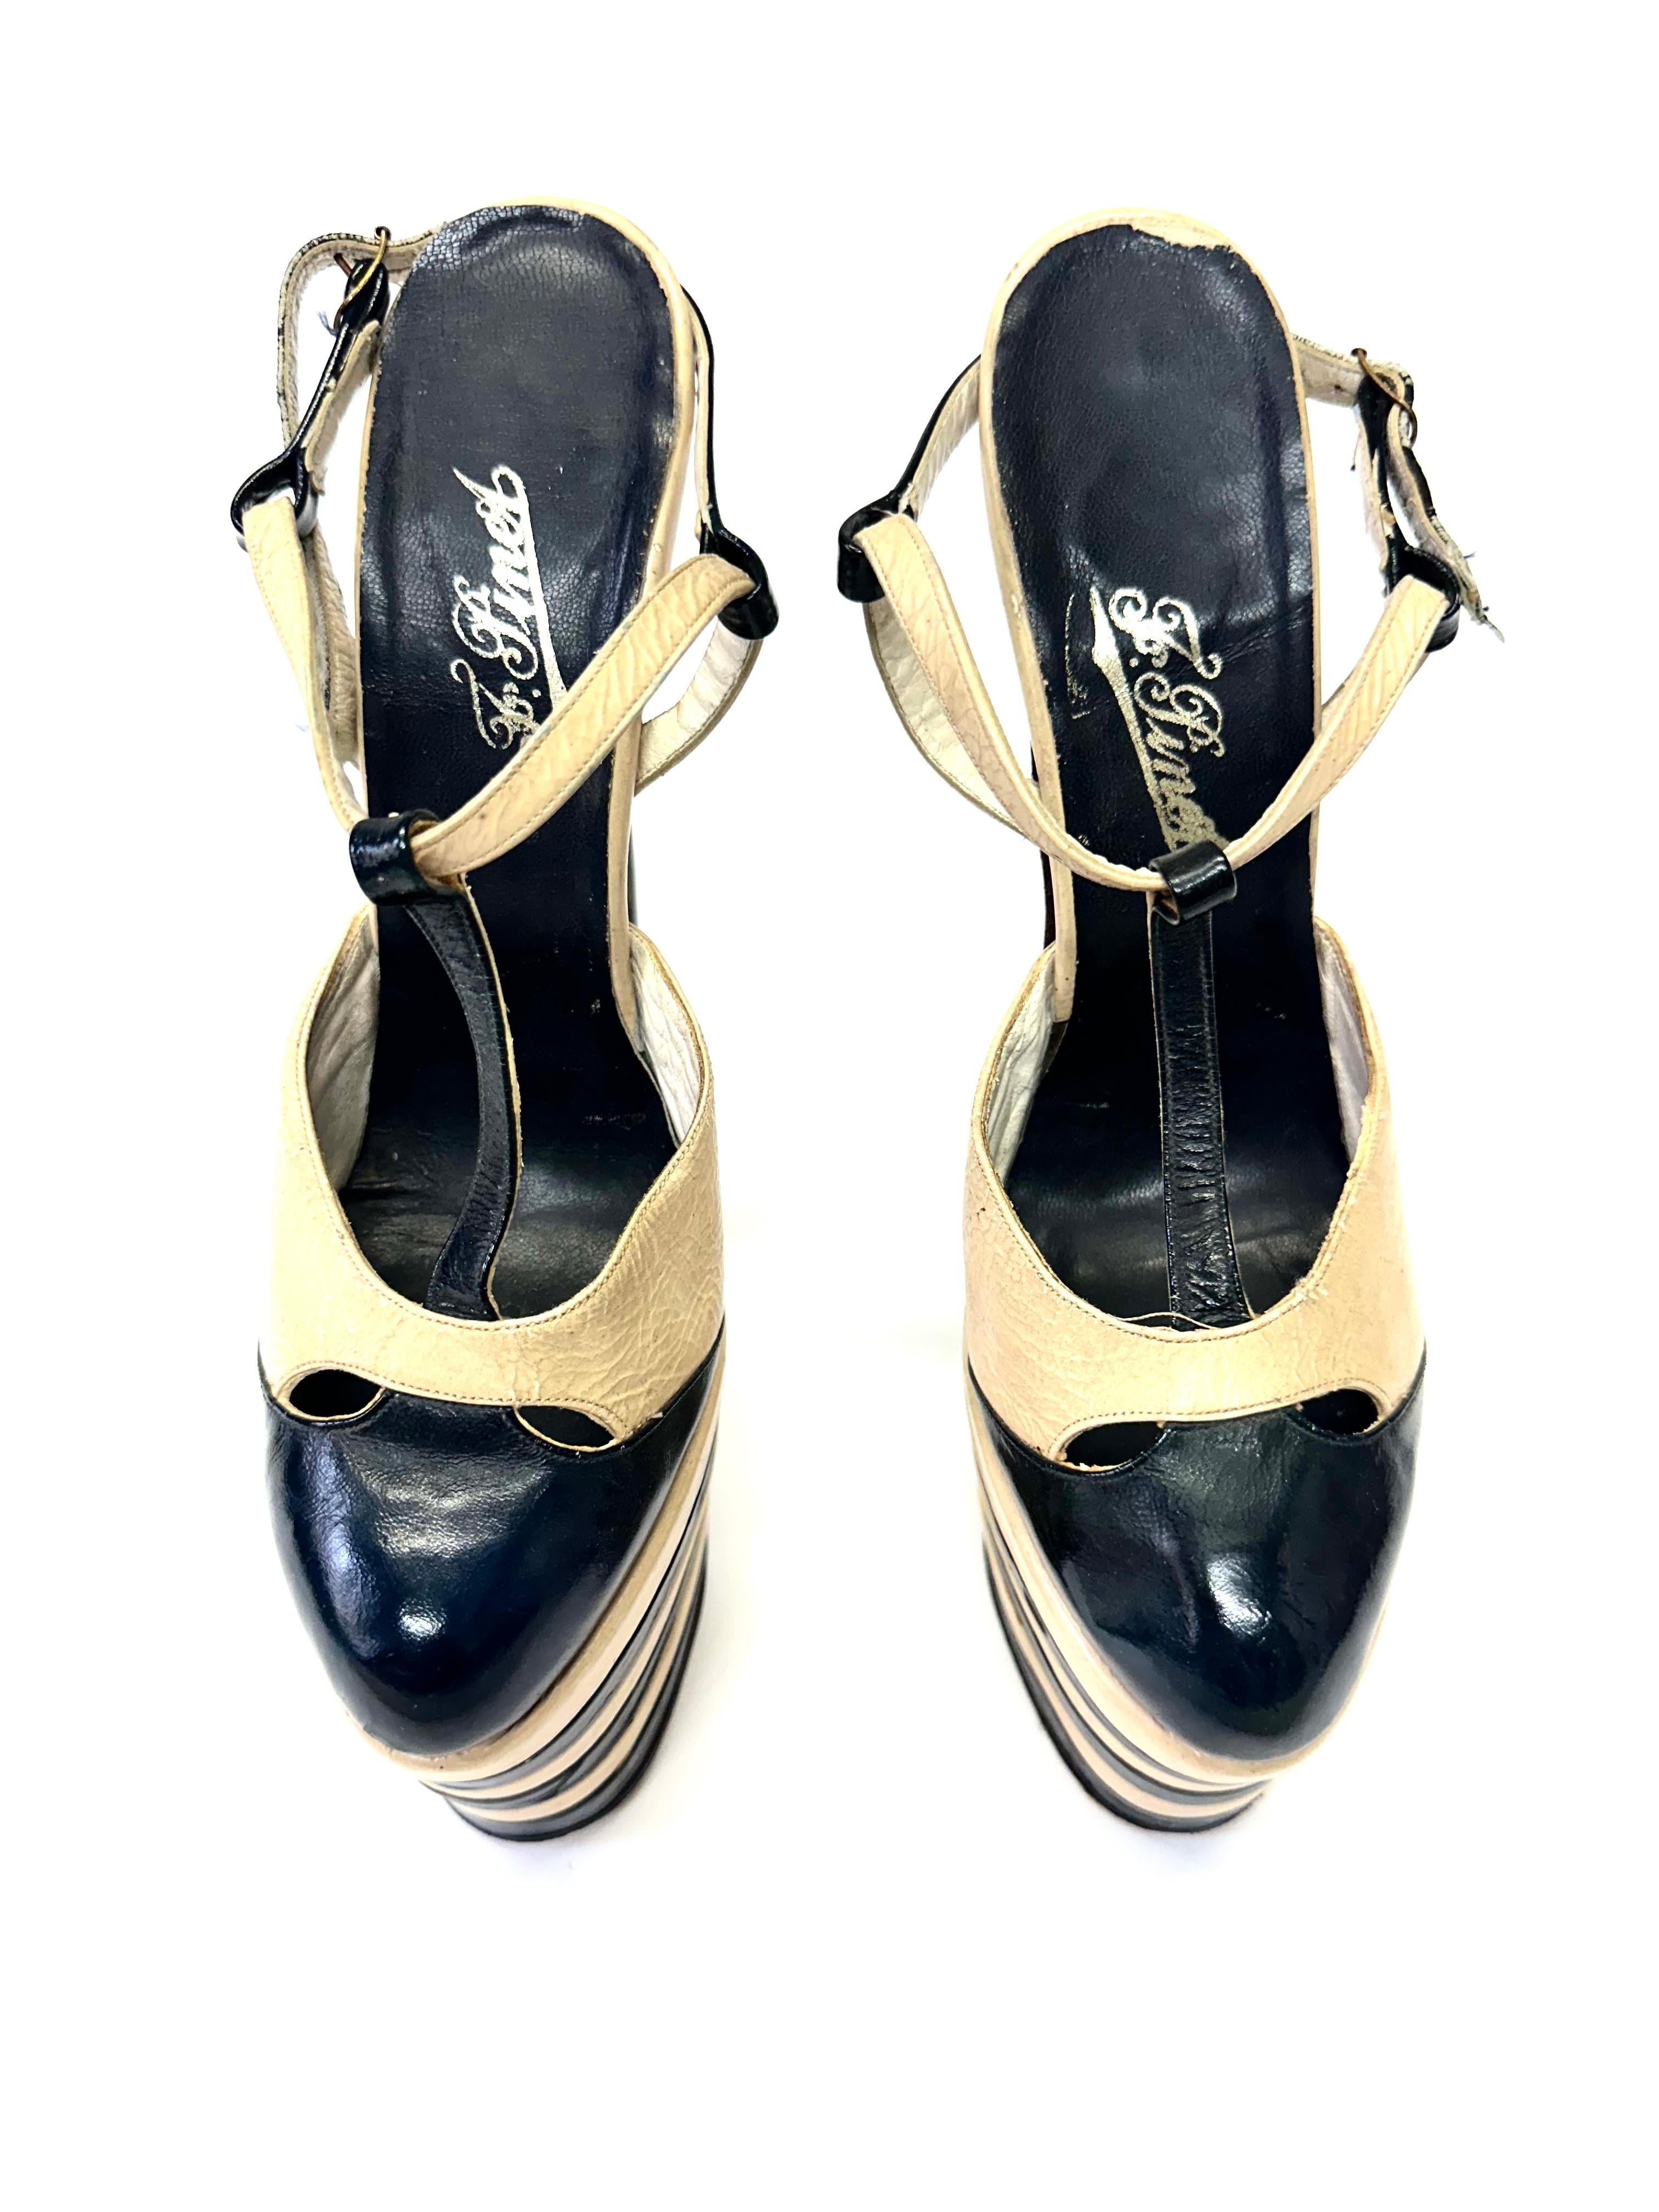 Francois Pinet, France Chaussures fétiches à plateforme en cuir noir et blanc, années 1930, avec d'imposantes plateformes surélevées rayées en noir et blanc, des talons de 23 cm, des barres en T sur le devant et des lanières sur le talon, embossées